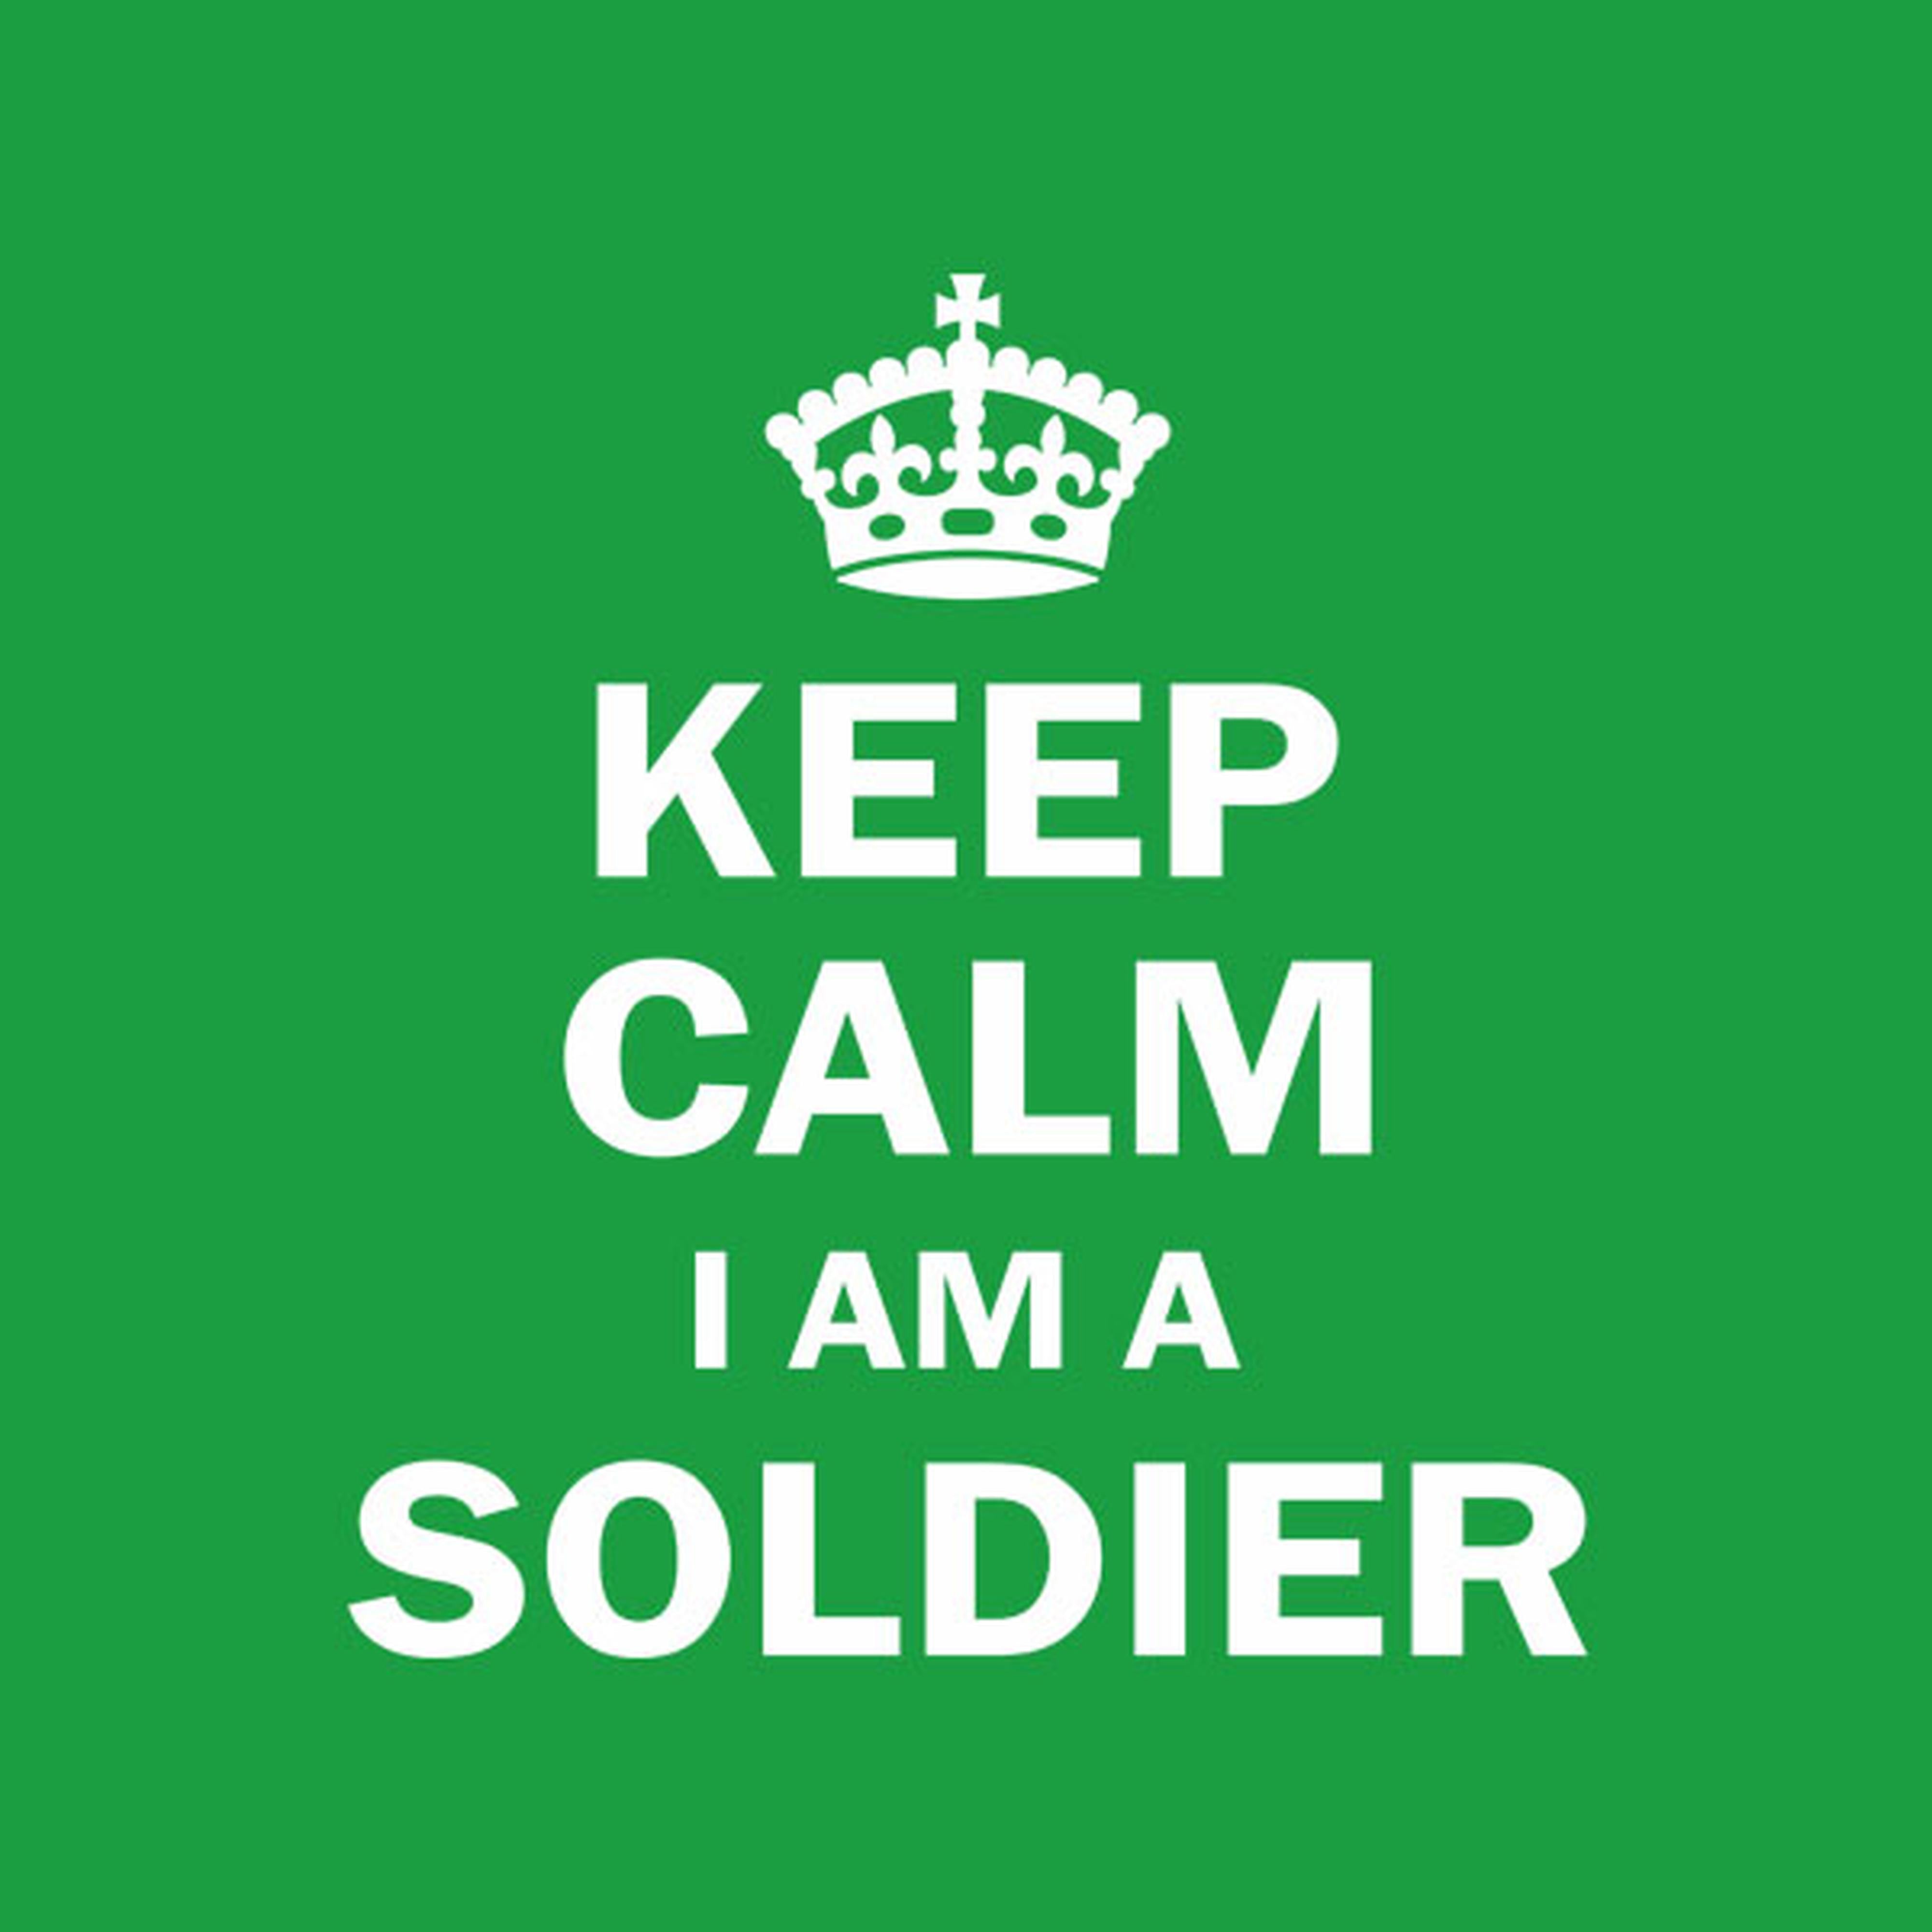 Keep calm I am a soldier - T-shirt